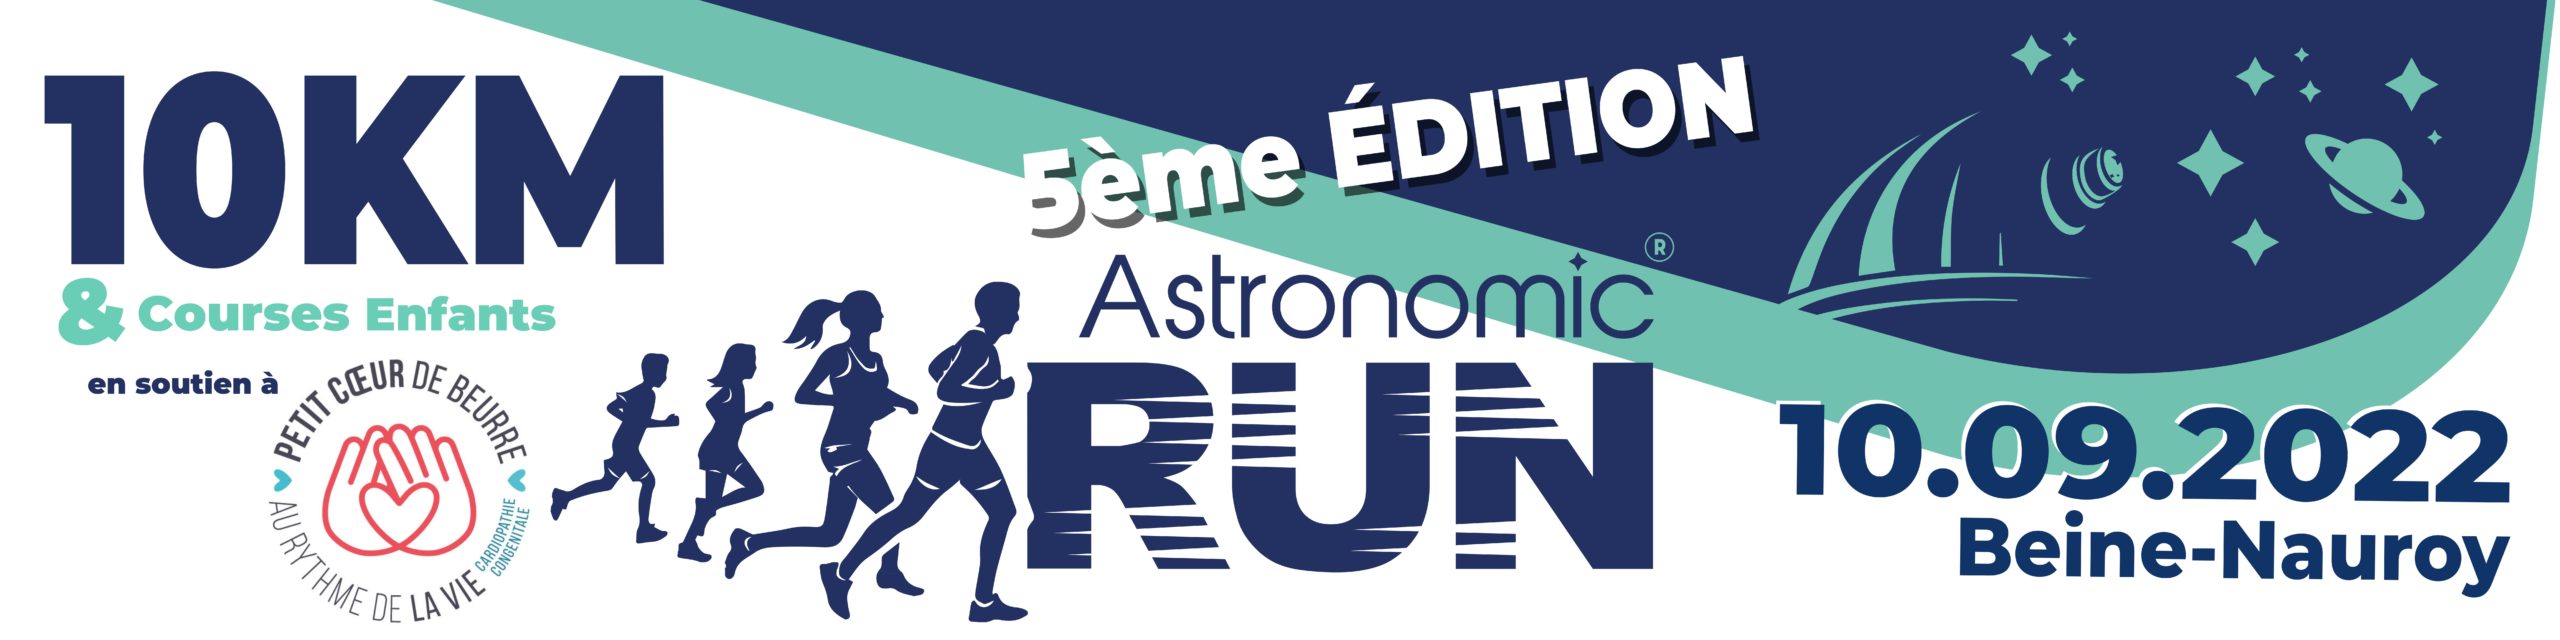 Astronomic Run – Site officiel – Beine-Nauroy, Marne